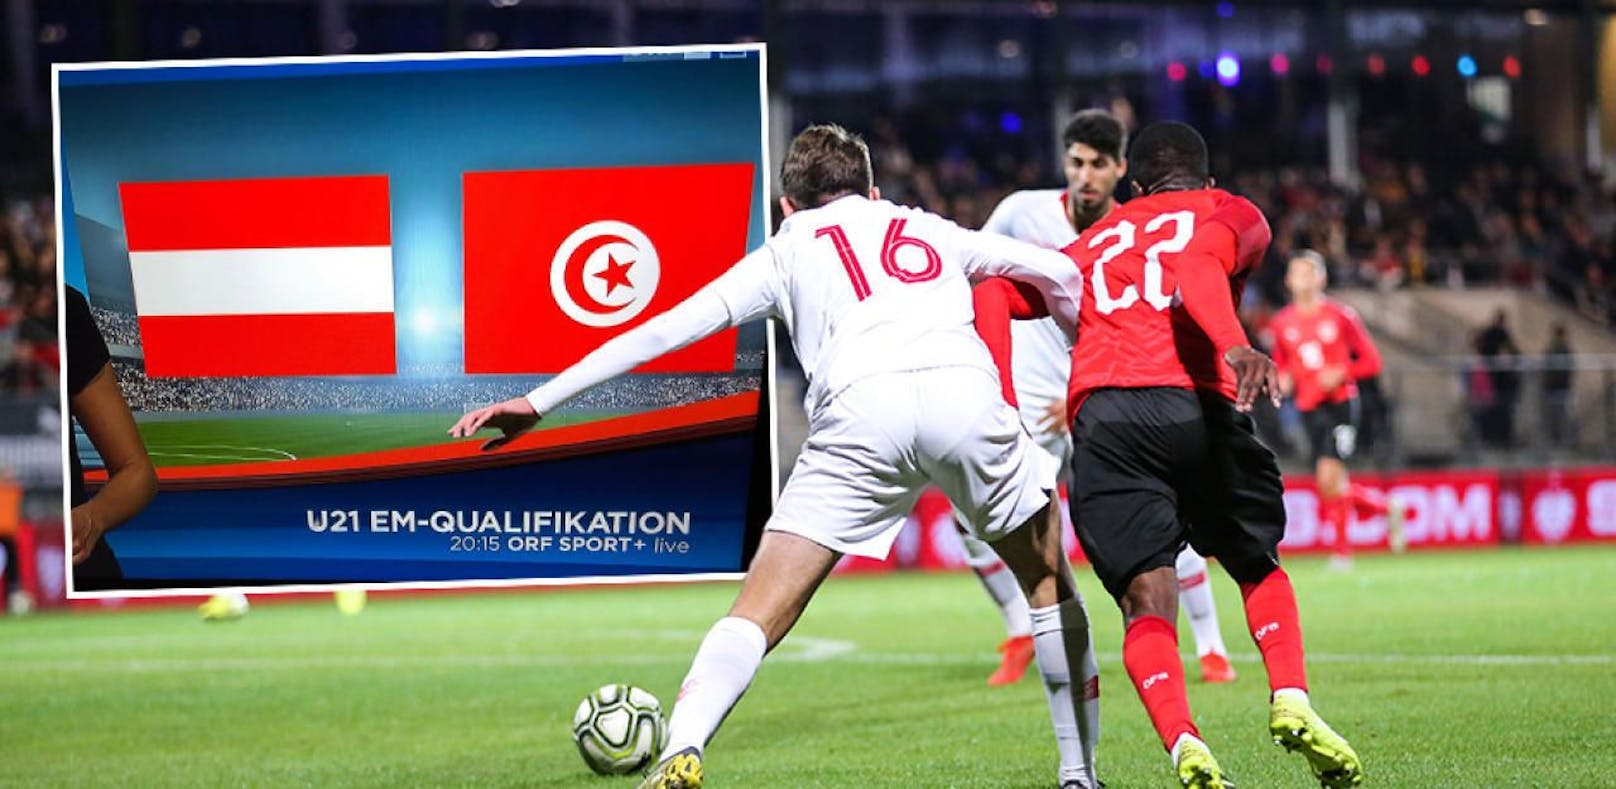 Der ORF blendete die Tunesien-Flagge ein, es spielte aber die Türkei gegen Österreich